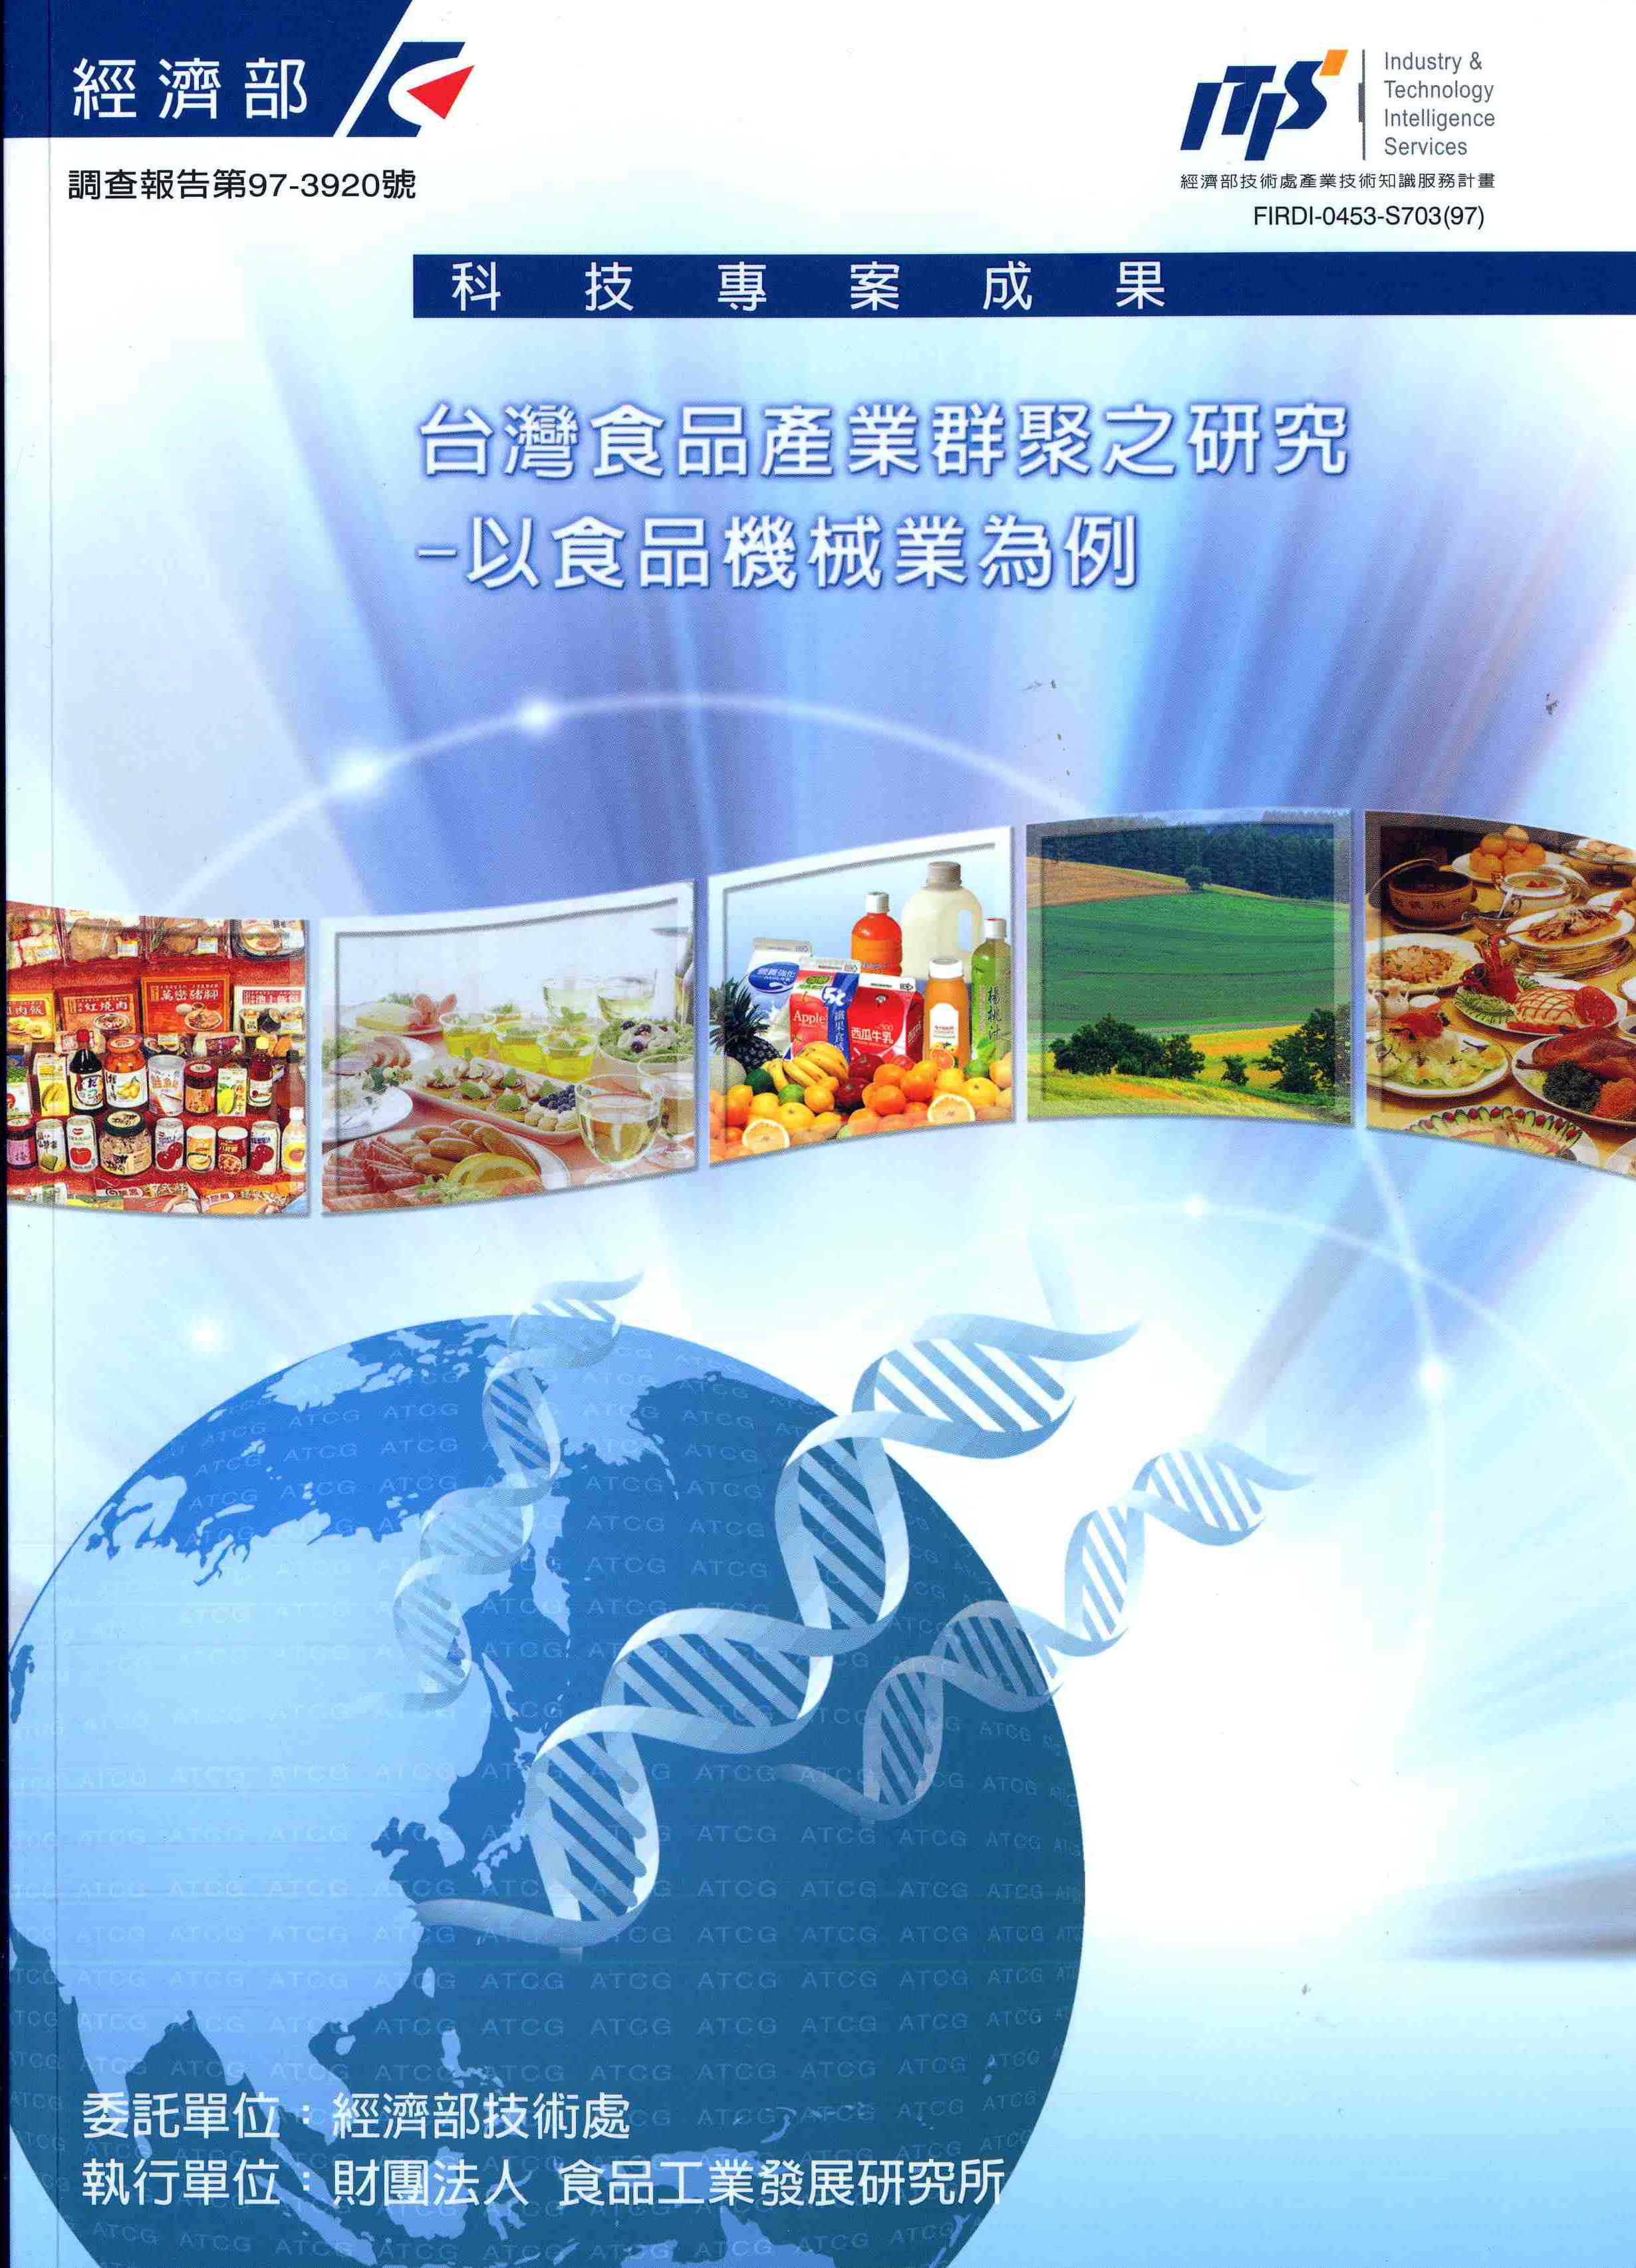 台灣食品產業群聚之研究-以食品機械業為例